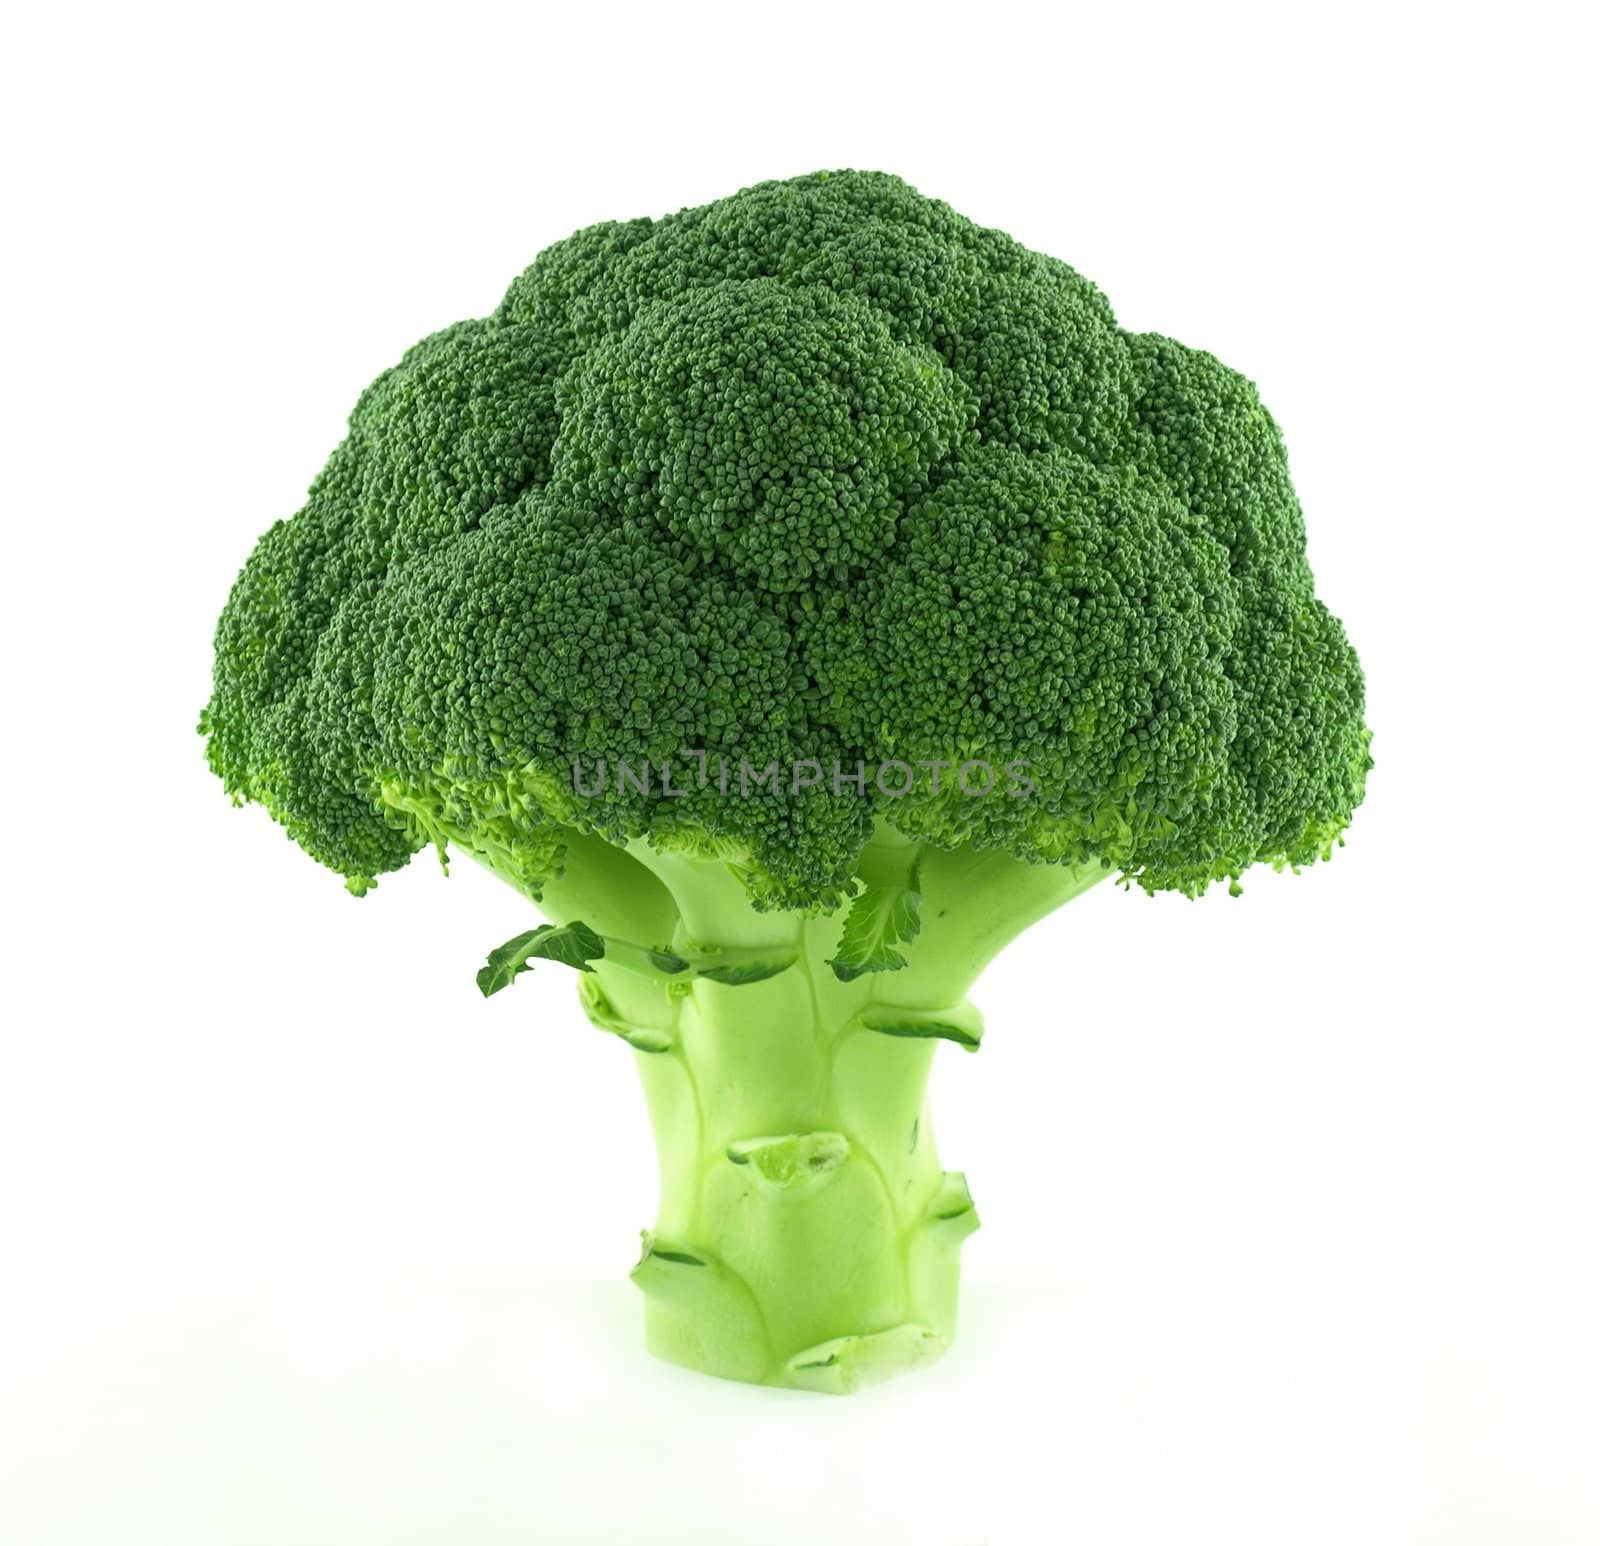 Fresh green broccoli by Ric510